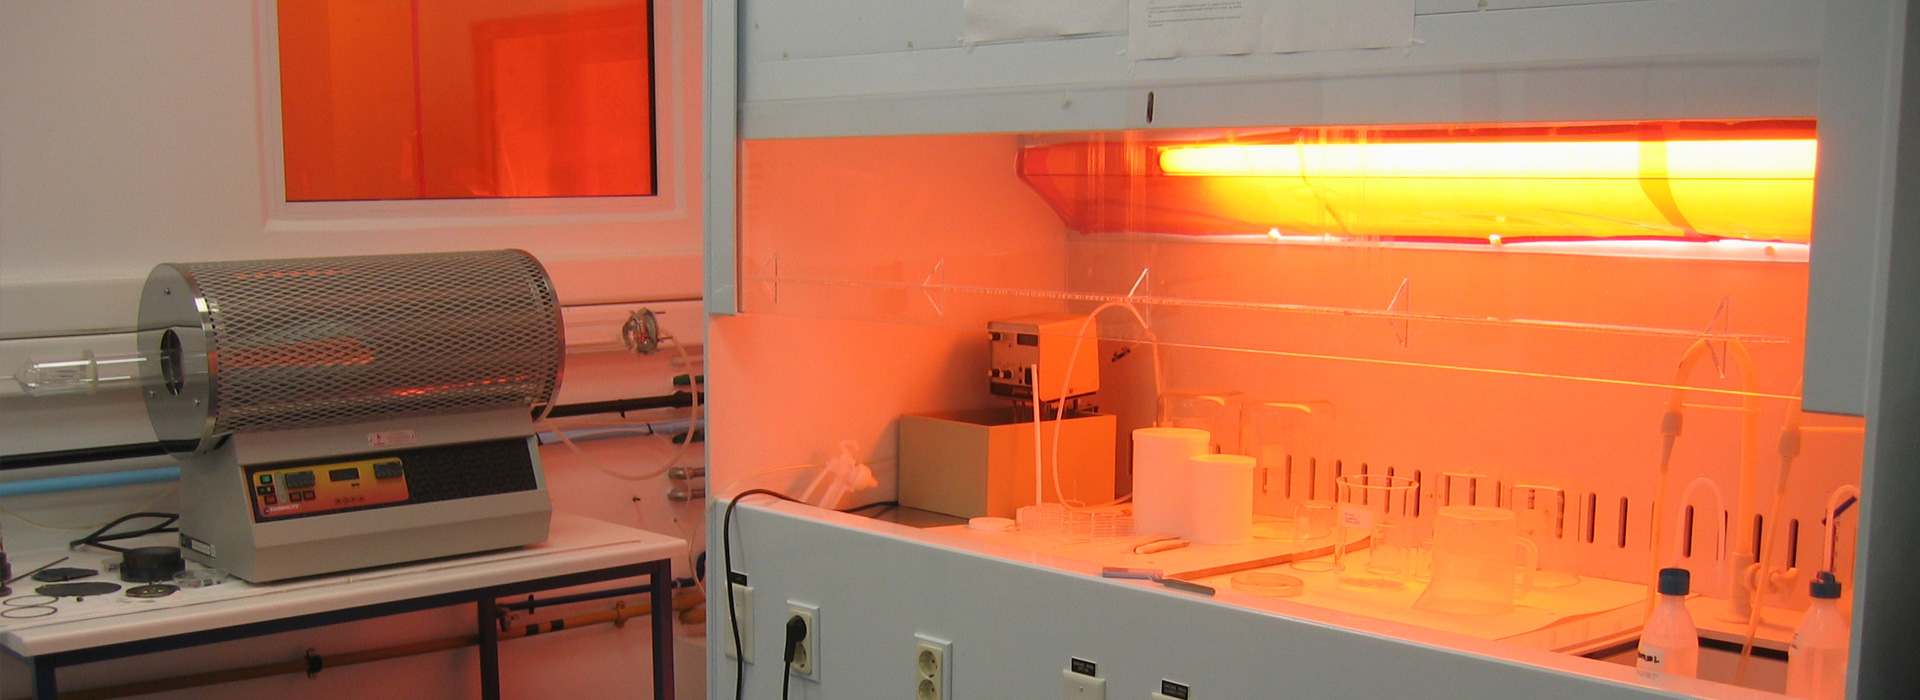 Laboratory of Advanced Materials and Micro/Nano Devices